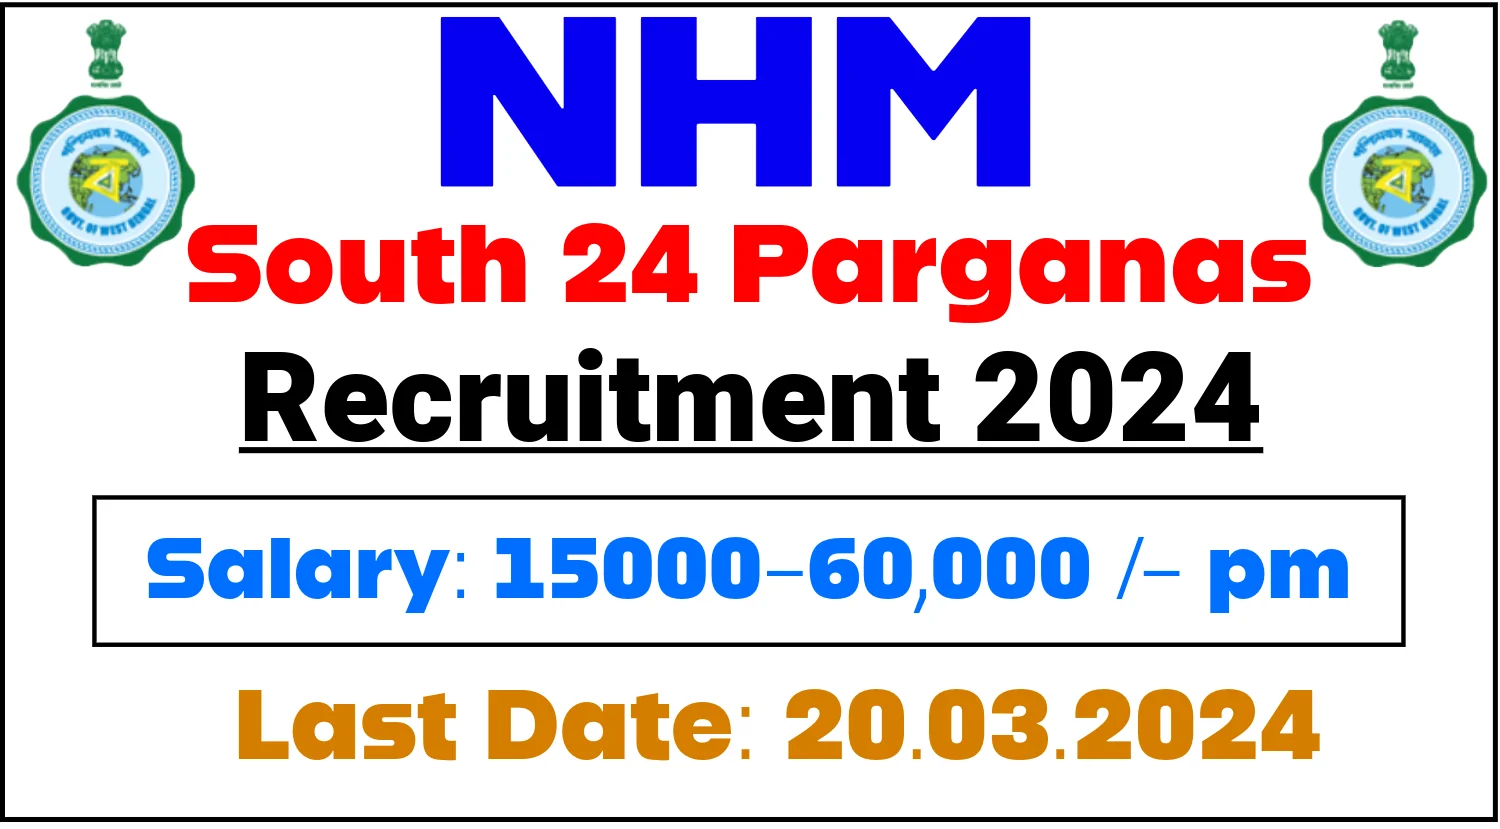 NHM South 24 Parganas Recruitment 2024